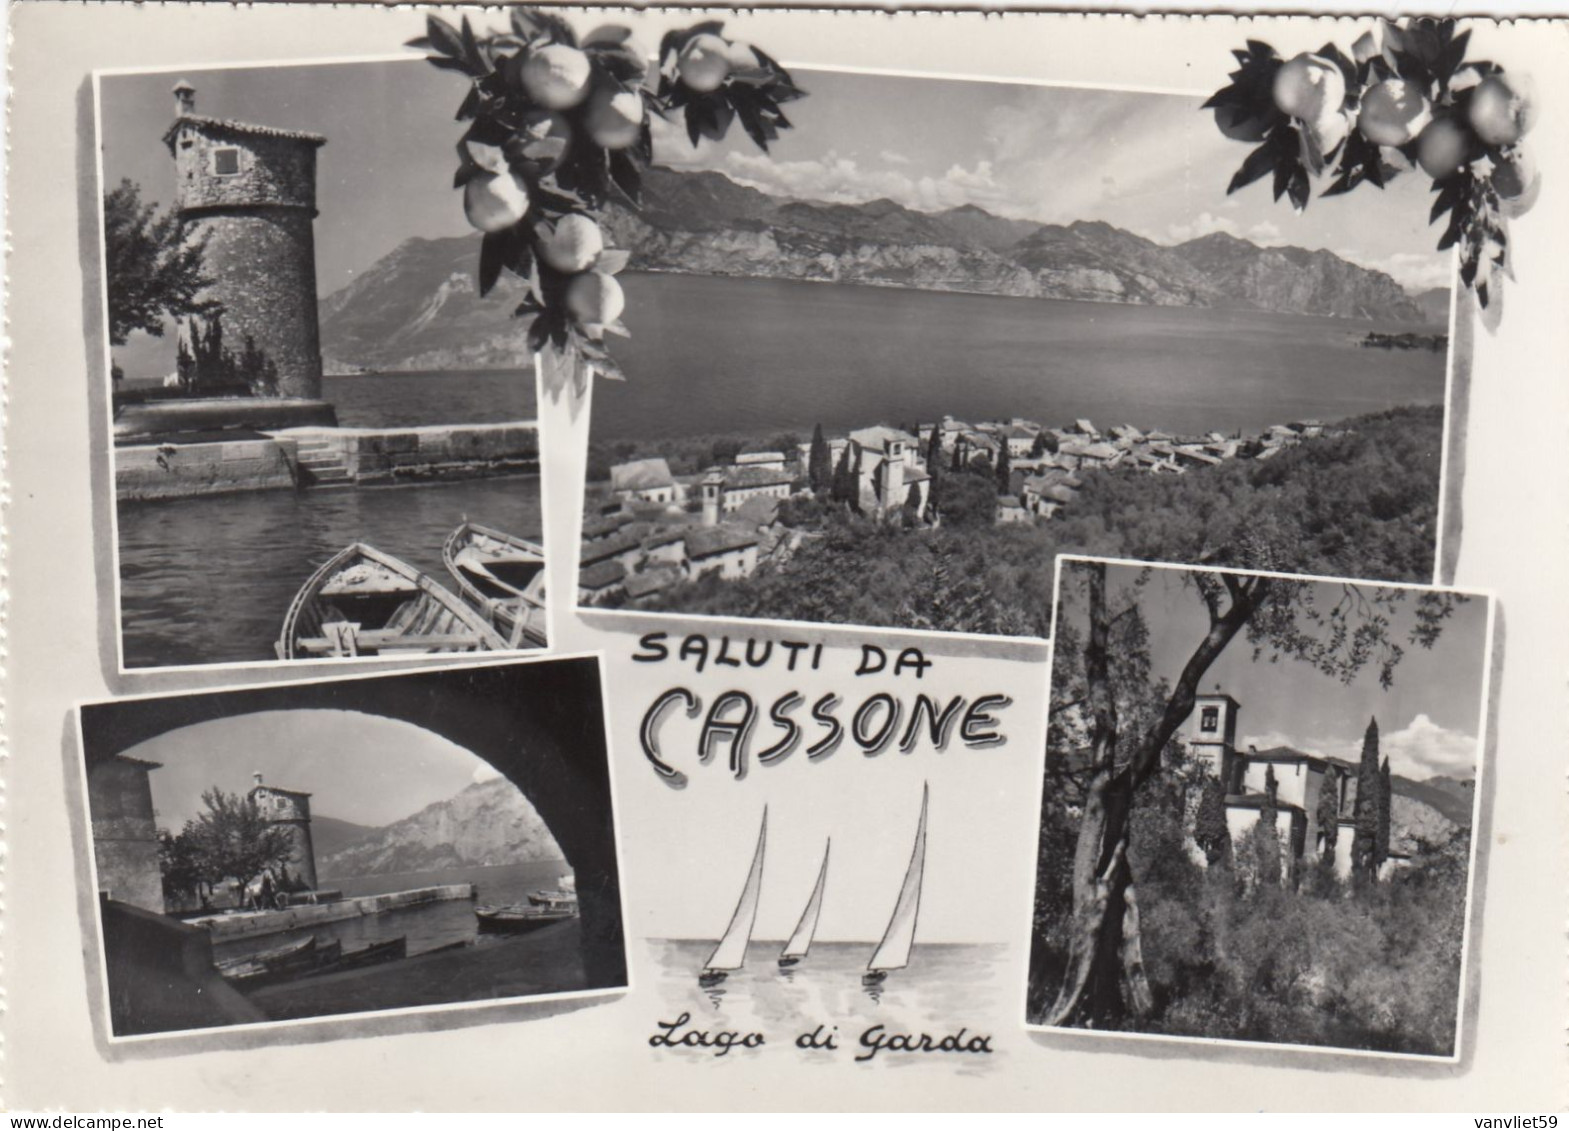 CASSONE-MALCESINE-VERONA-LAGO DI GARDA-SALUTI DA..-MULTIVEDUTE-CARTOLINA VERA FOTOGRAFIA-VIAGG. IL 17-8-1964 - Verona